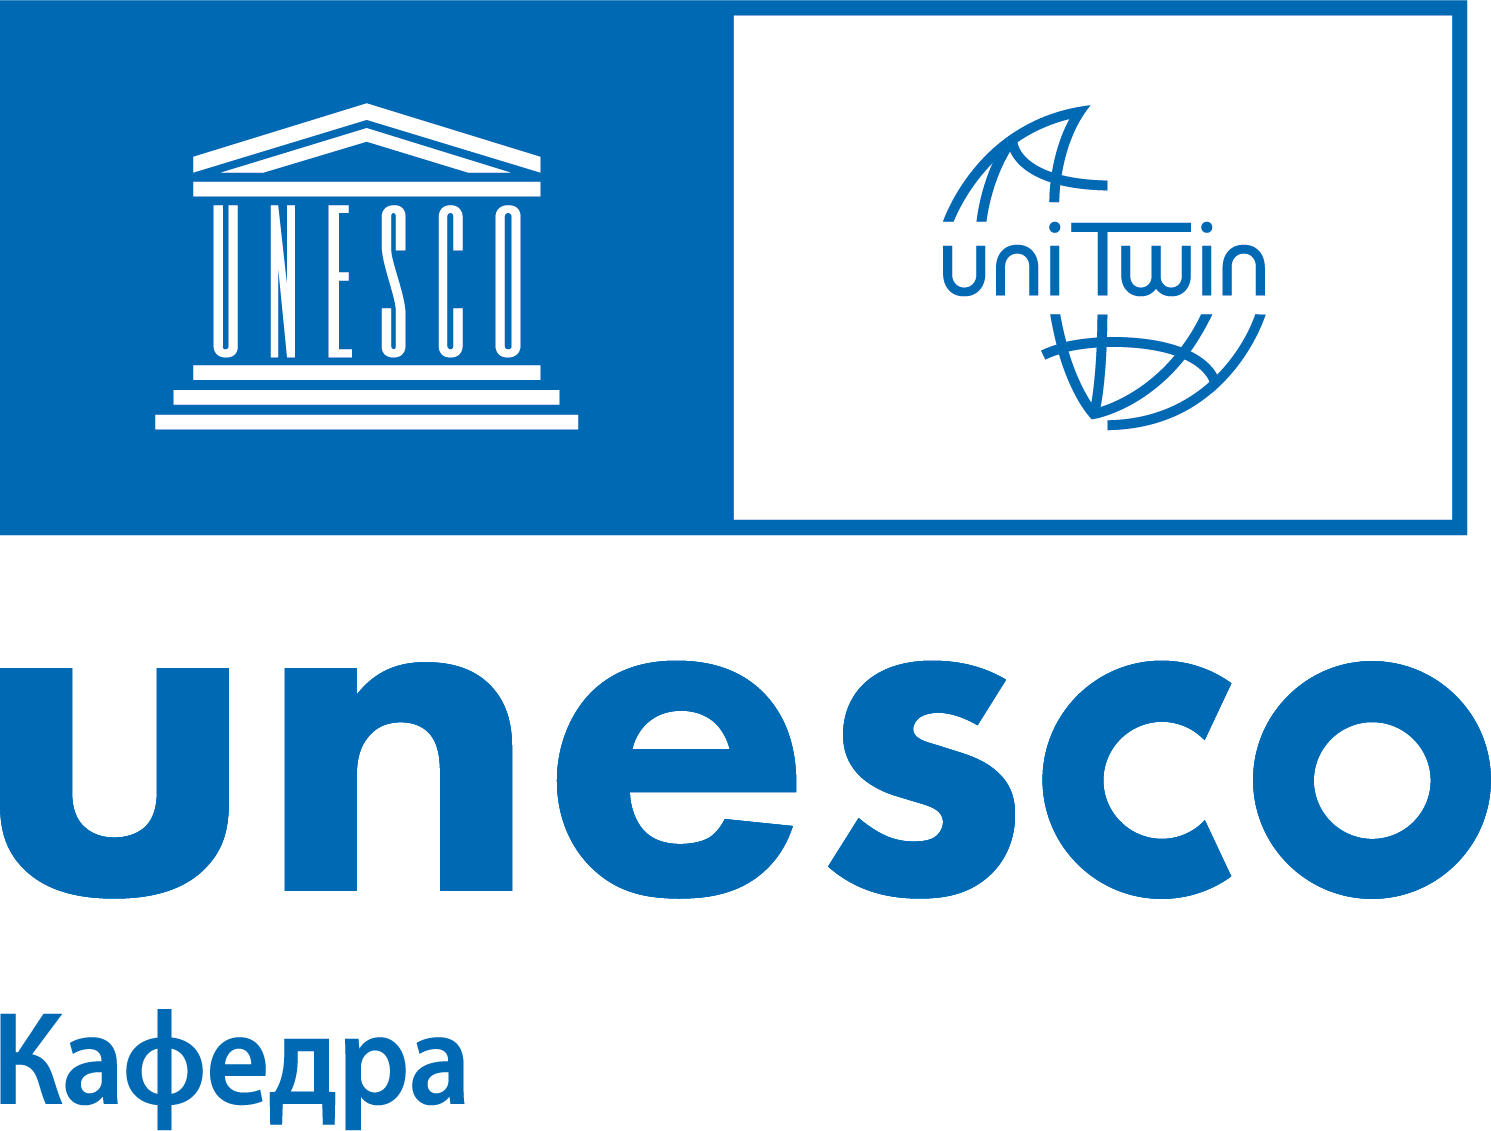 Unesco site. ЮНЕСКО. ЮНЕСКО логотип. Кафедра ЮНЕСКО. ЮНЕСКО логотип 2022.